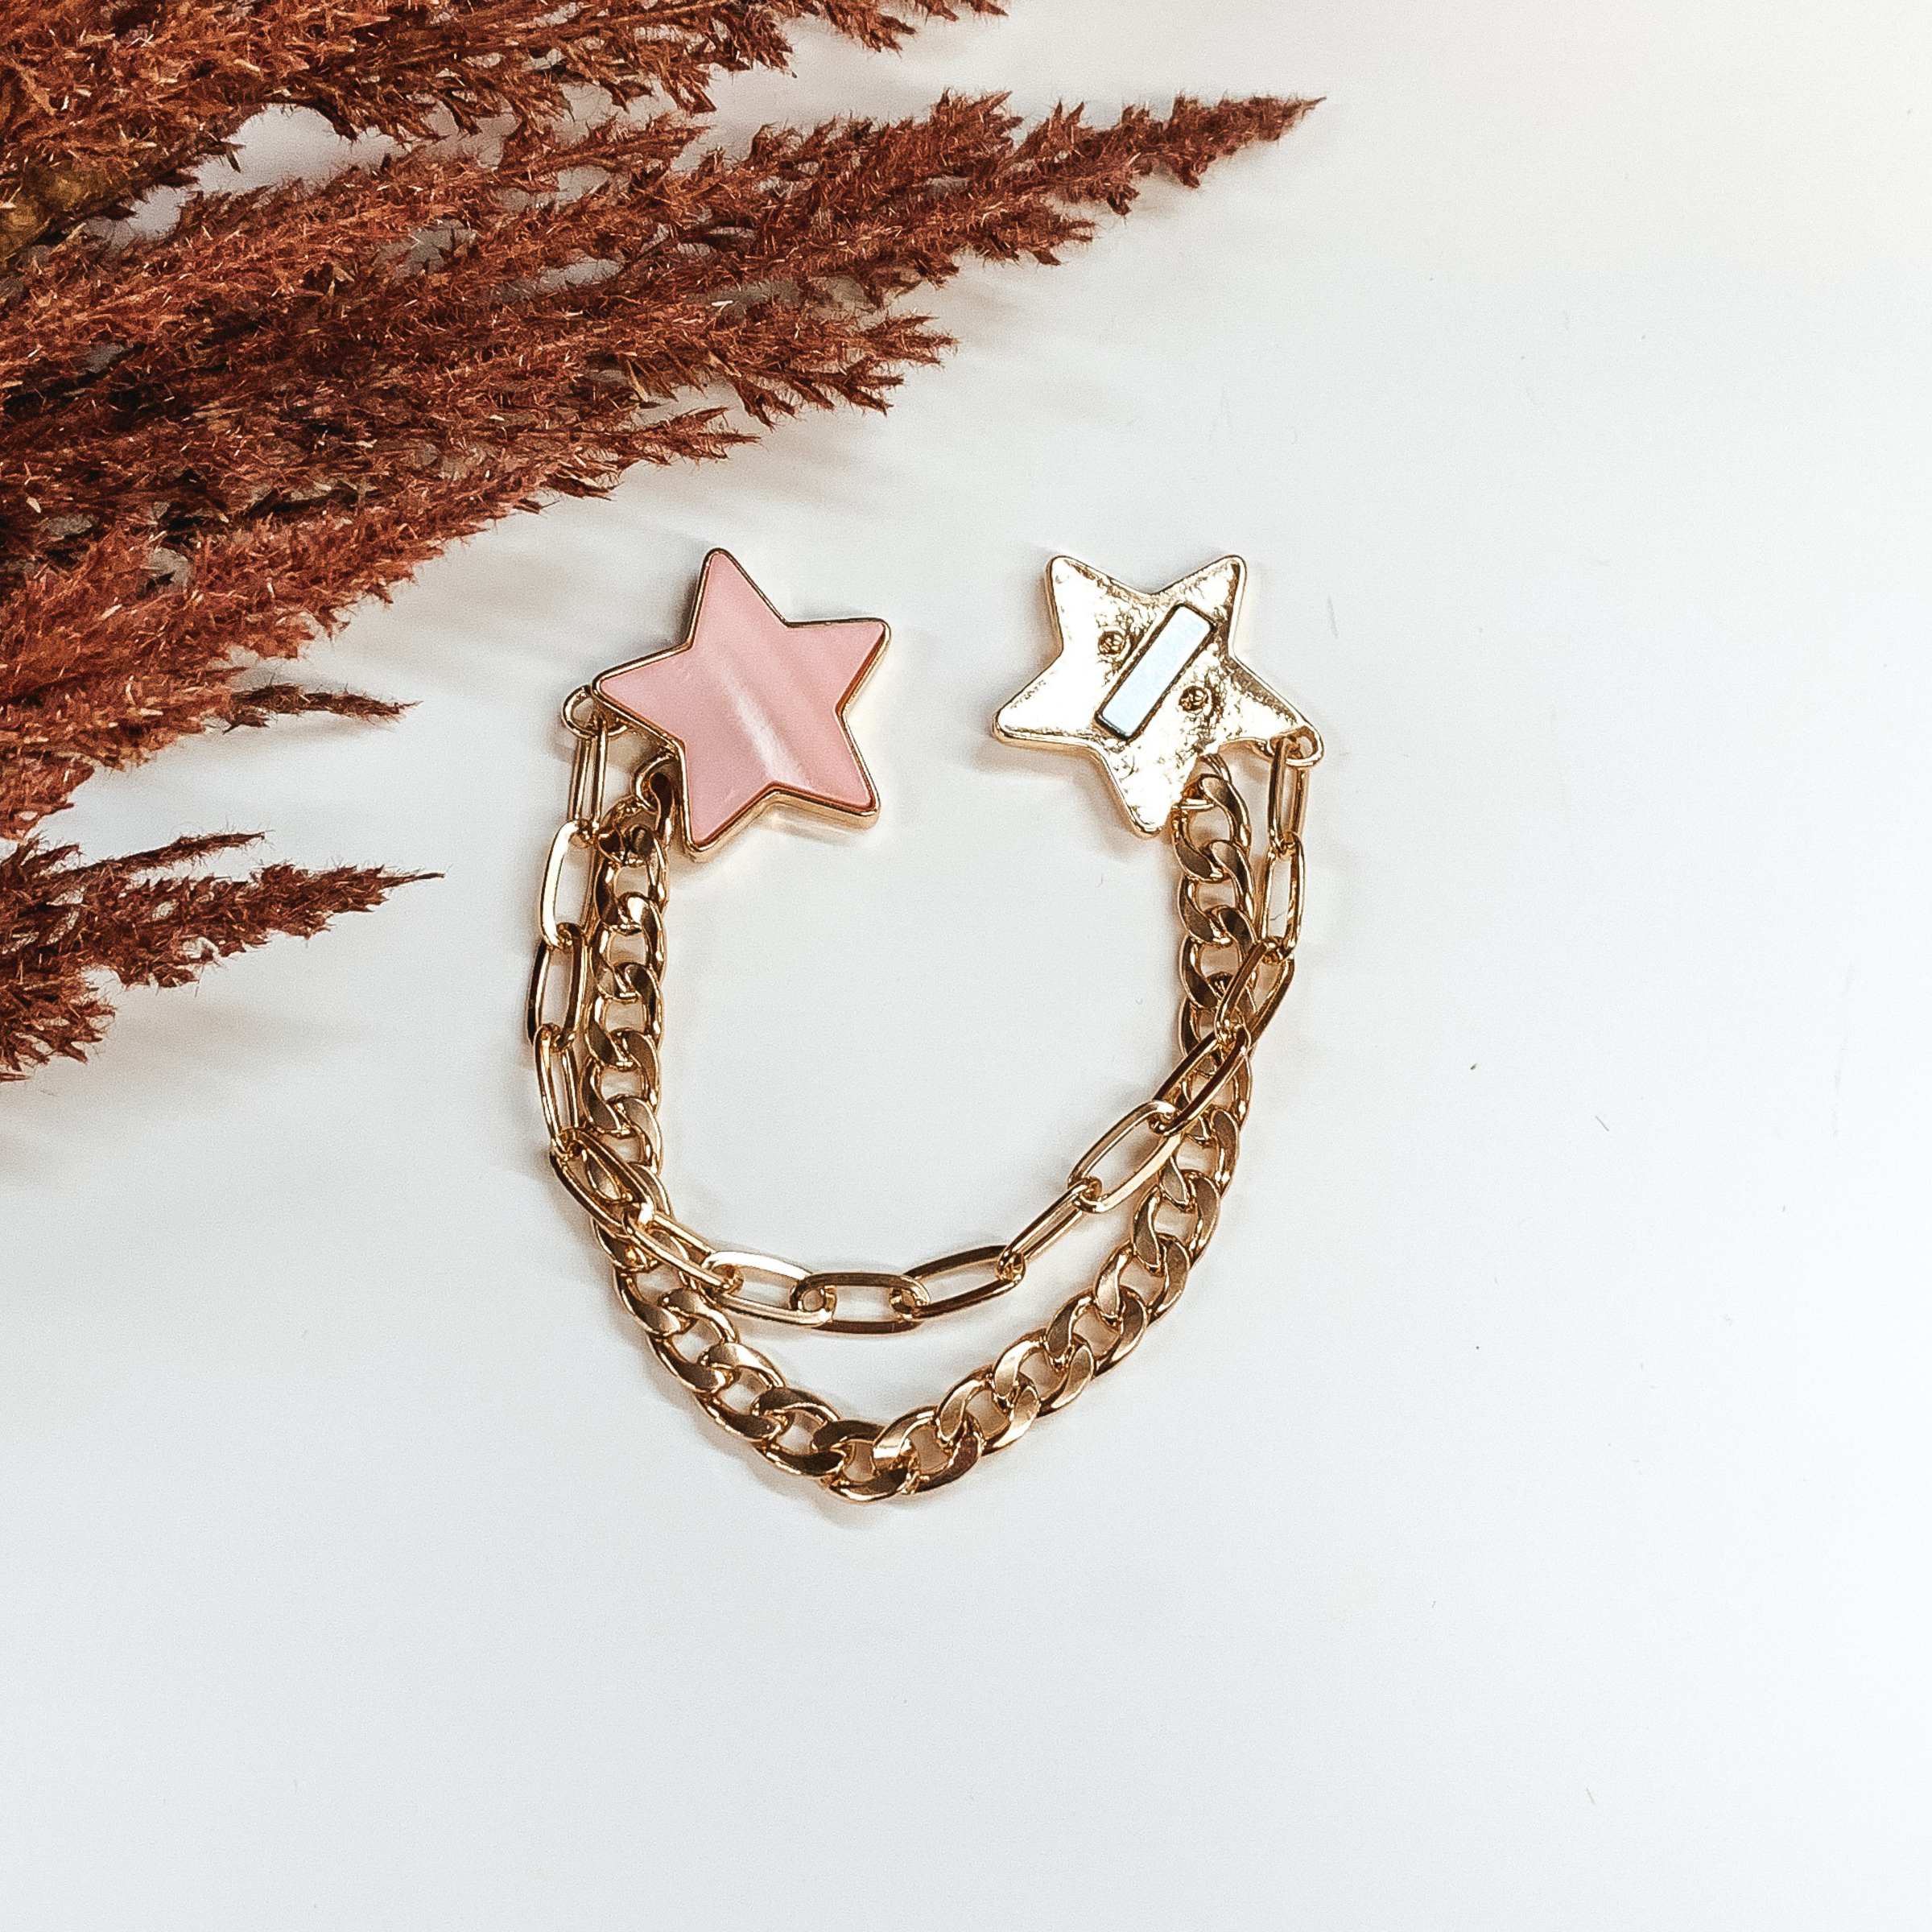 Sparks Flying Gold Bracelet in Pink - Giddy Up Glamour Boutique